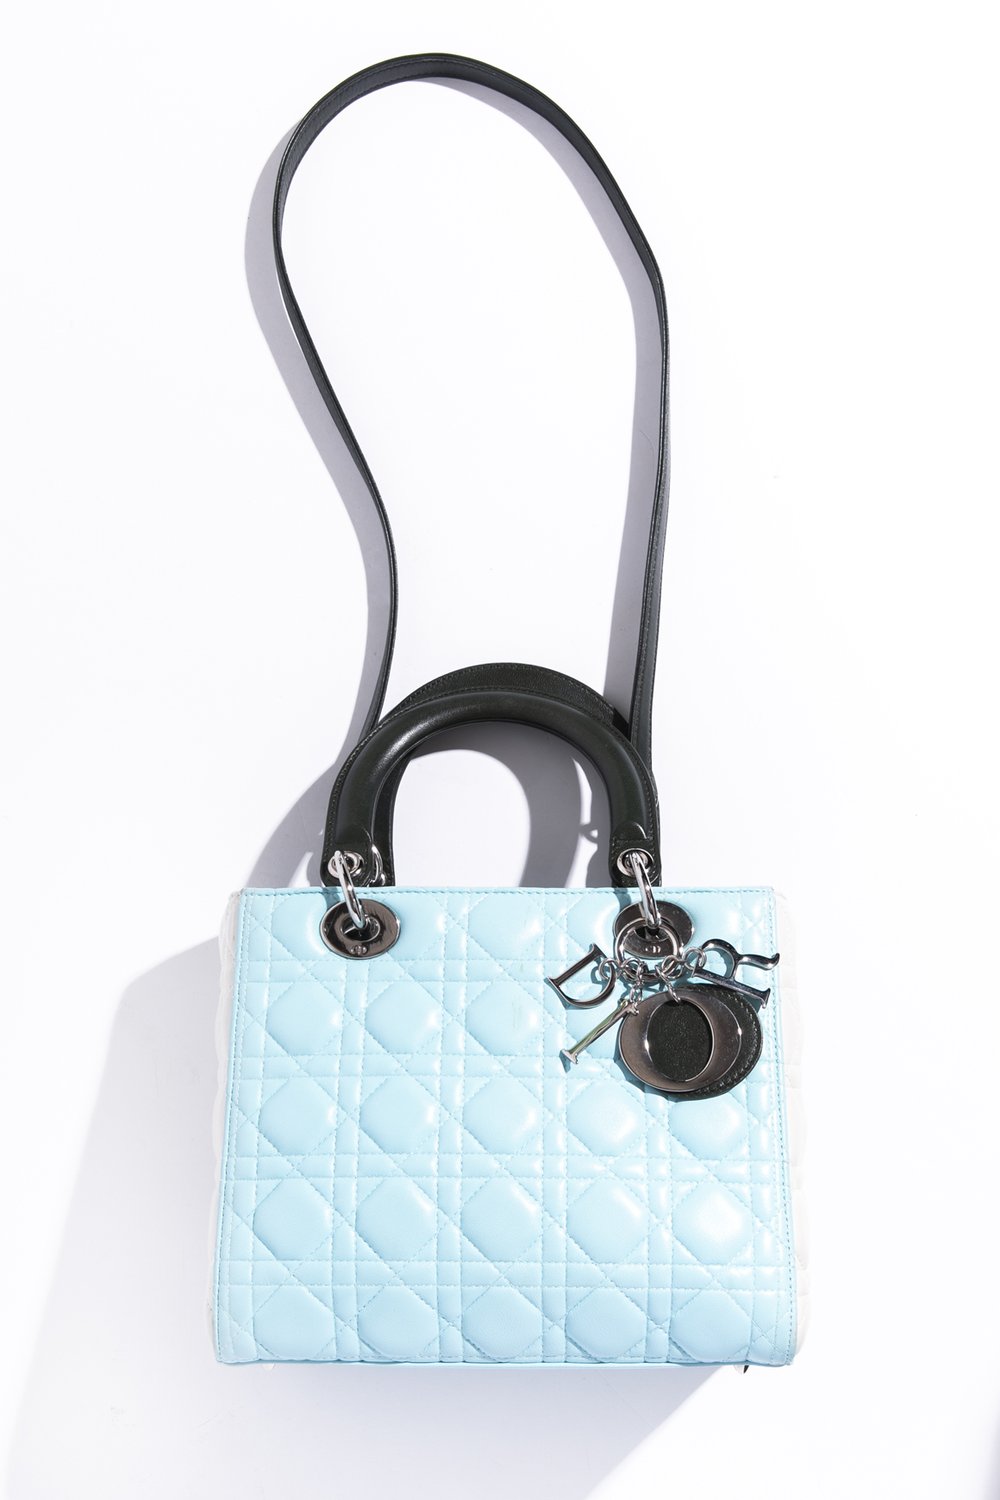 DIOR Medium Lady Dior Floral Handbag — MOSS Designer Consignment